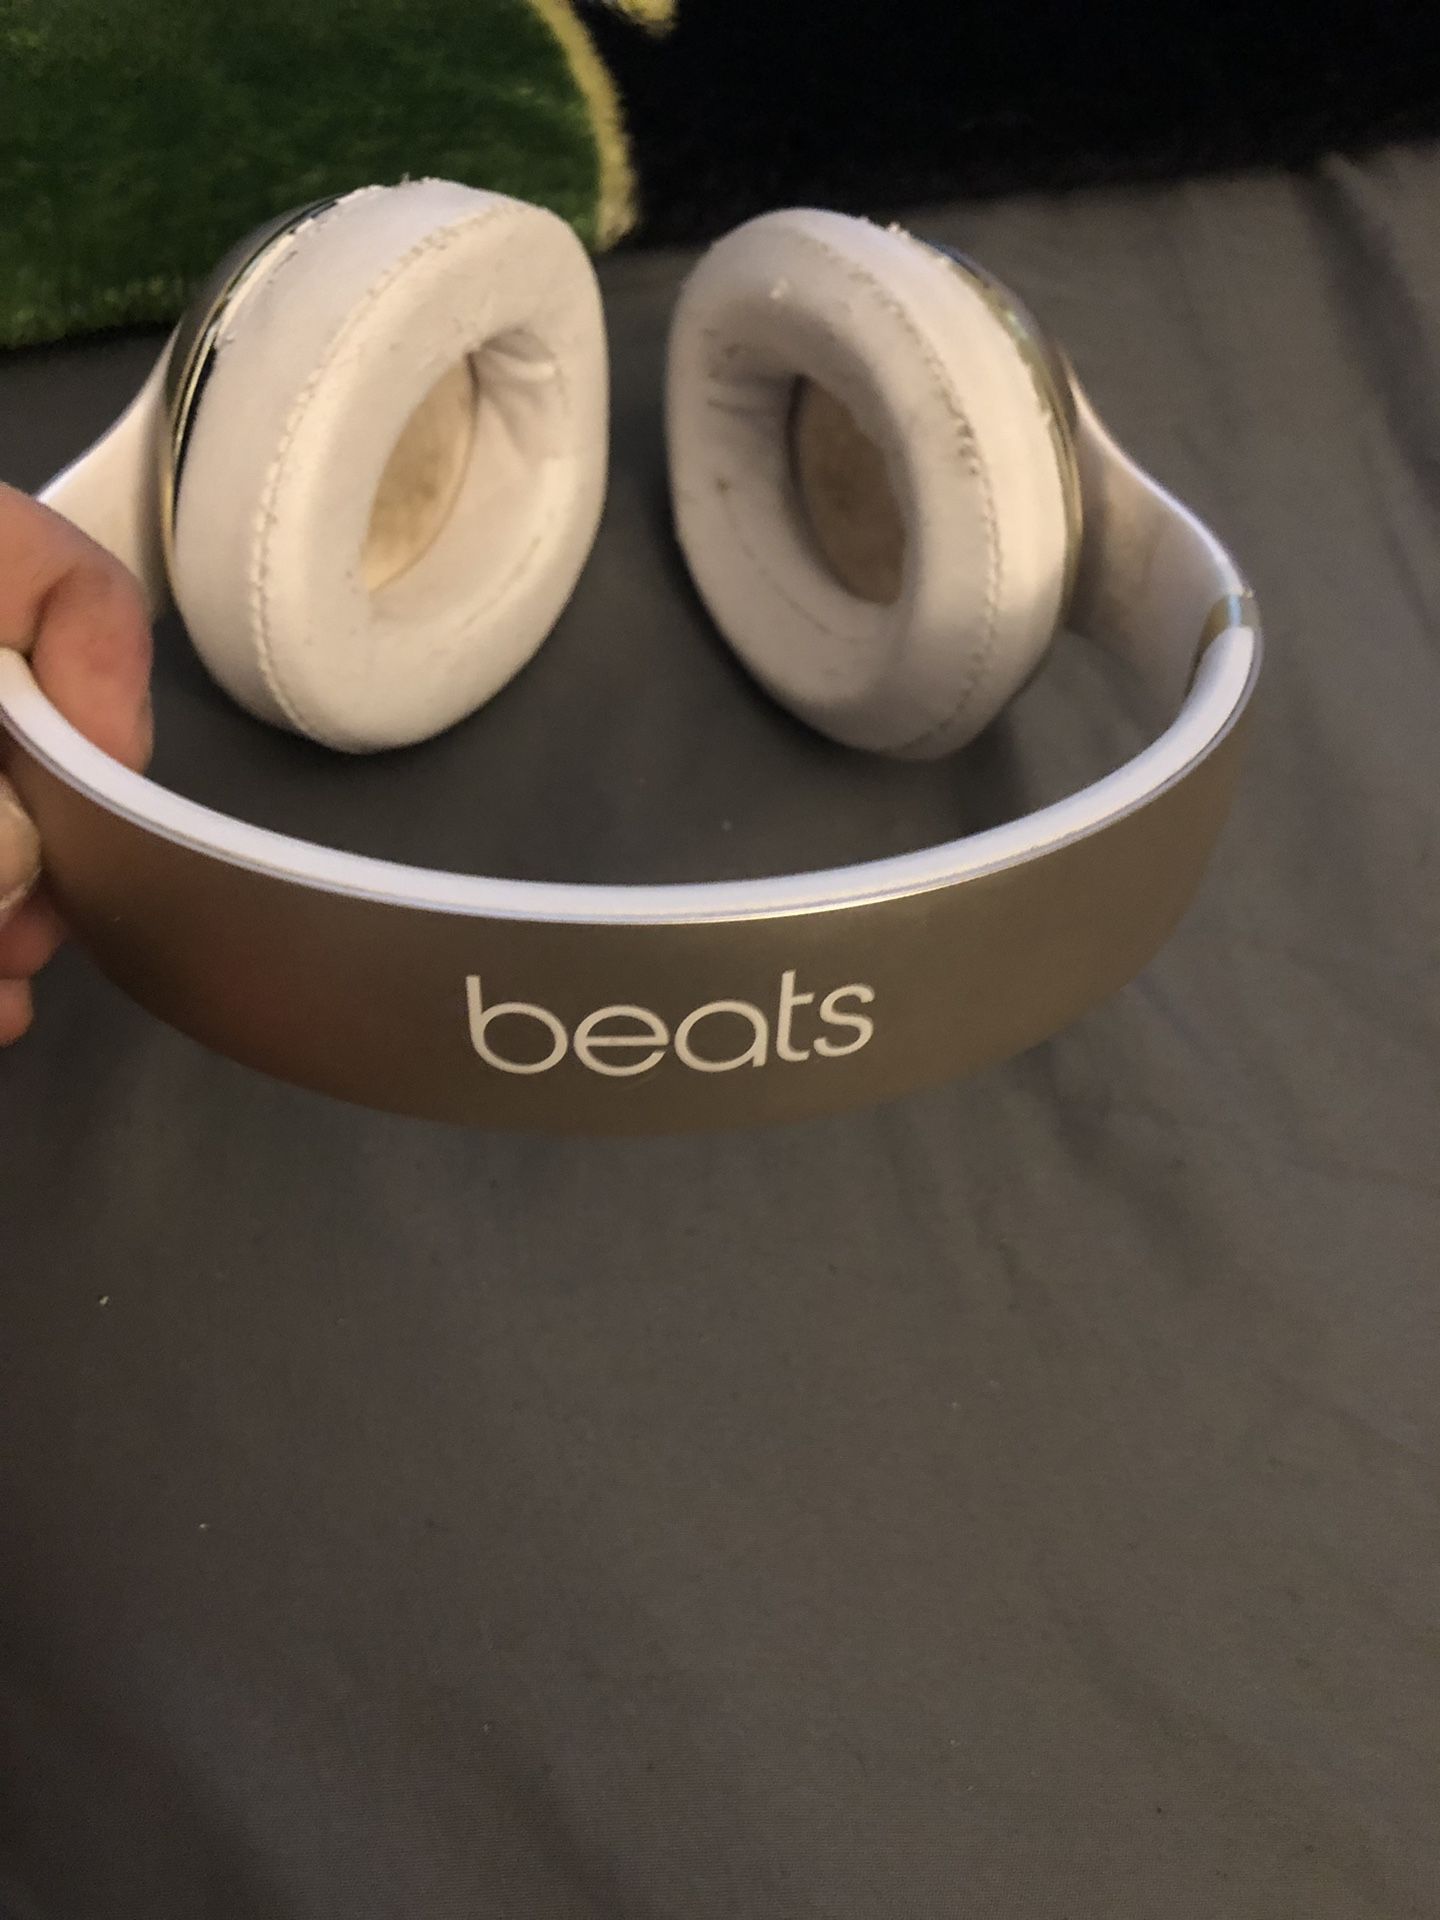 Beats headphones